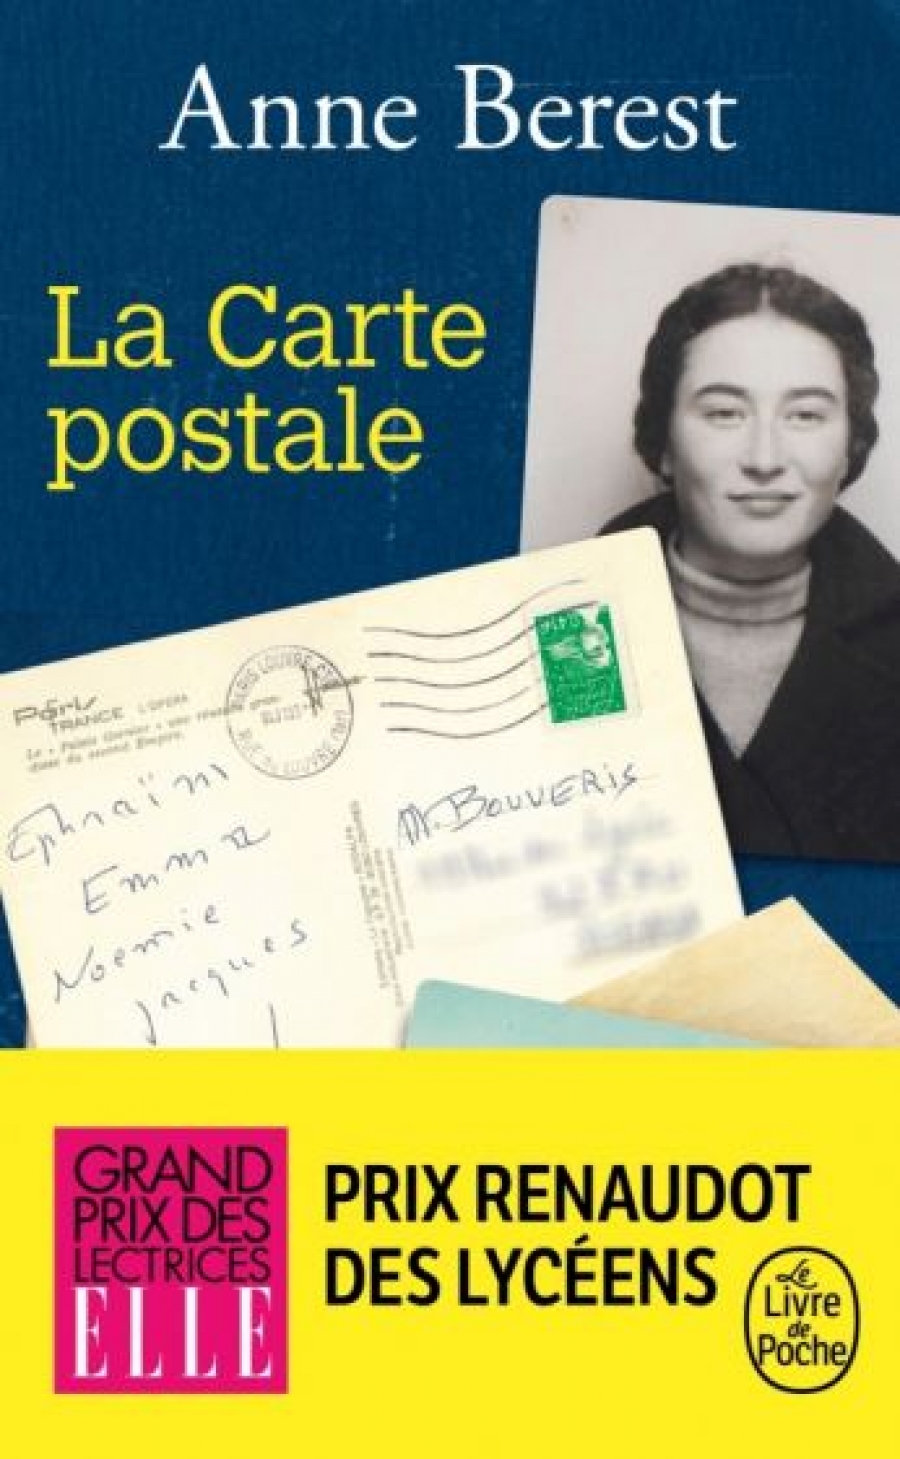 Berest Anne La Carte postale 